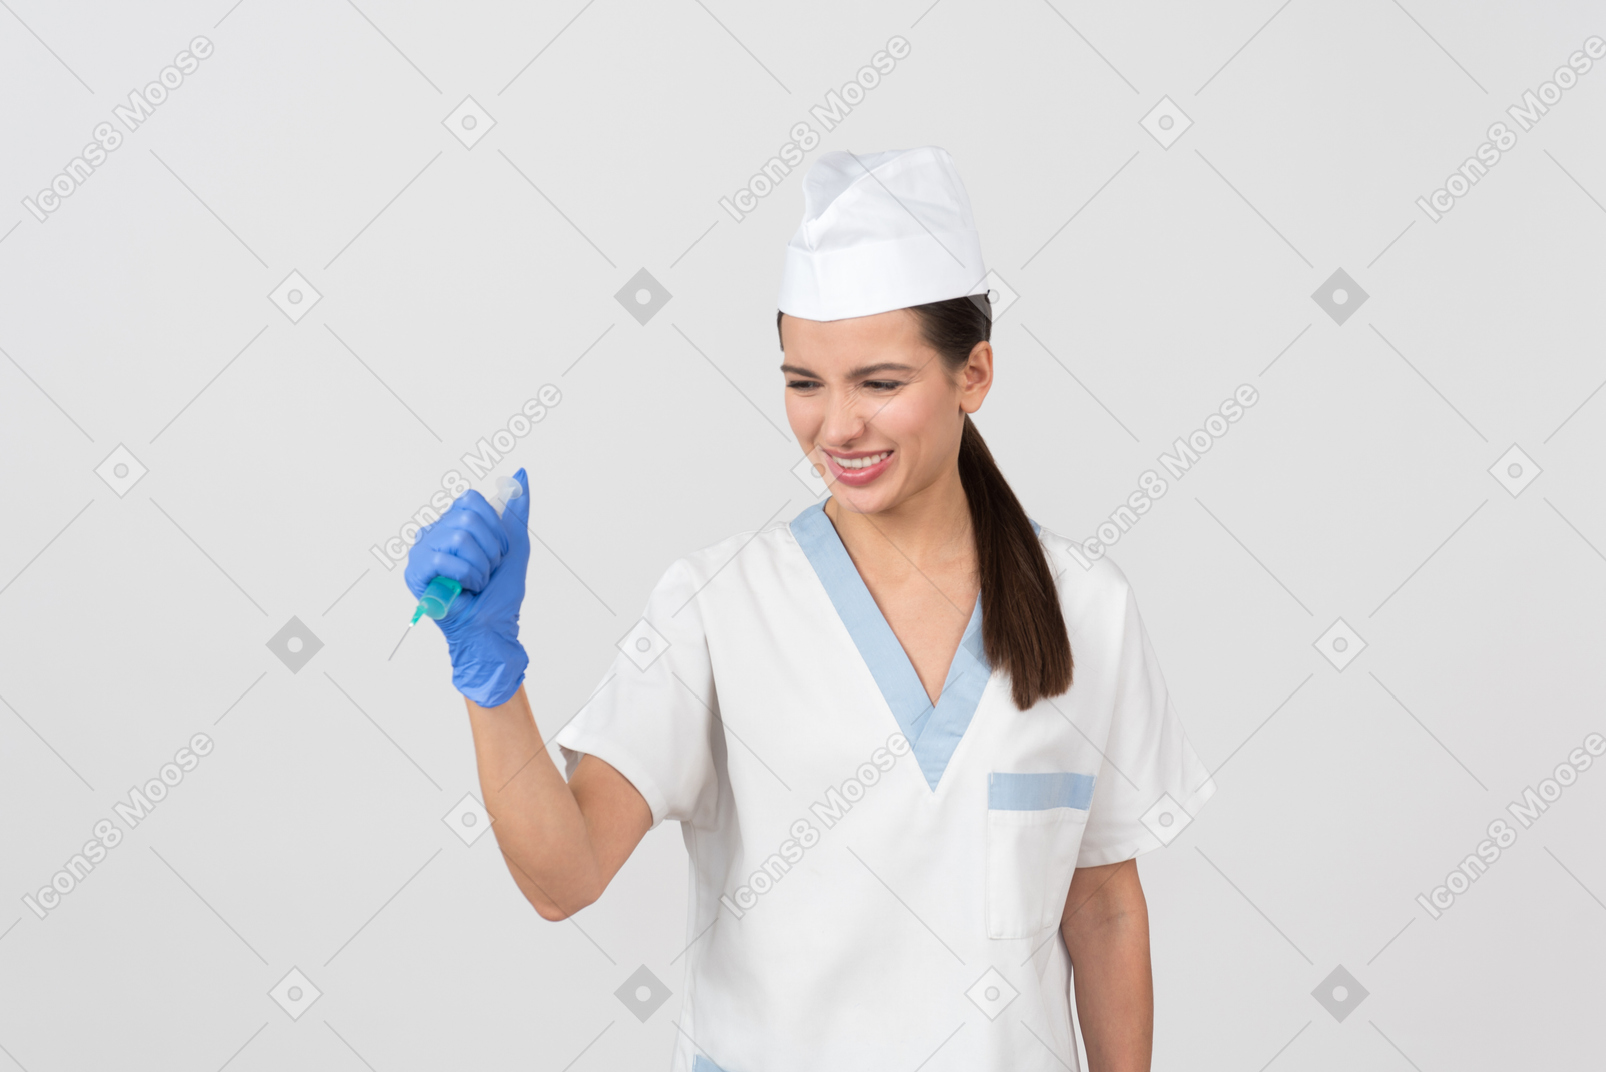 Annoyed young nurse waving a syringe